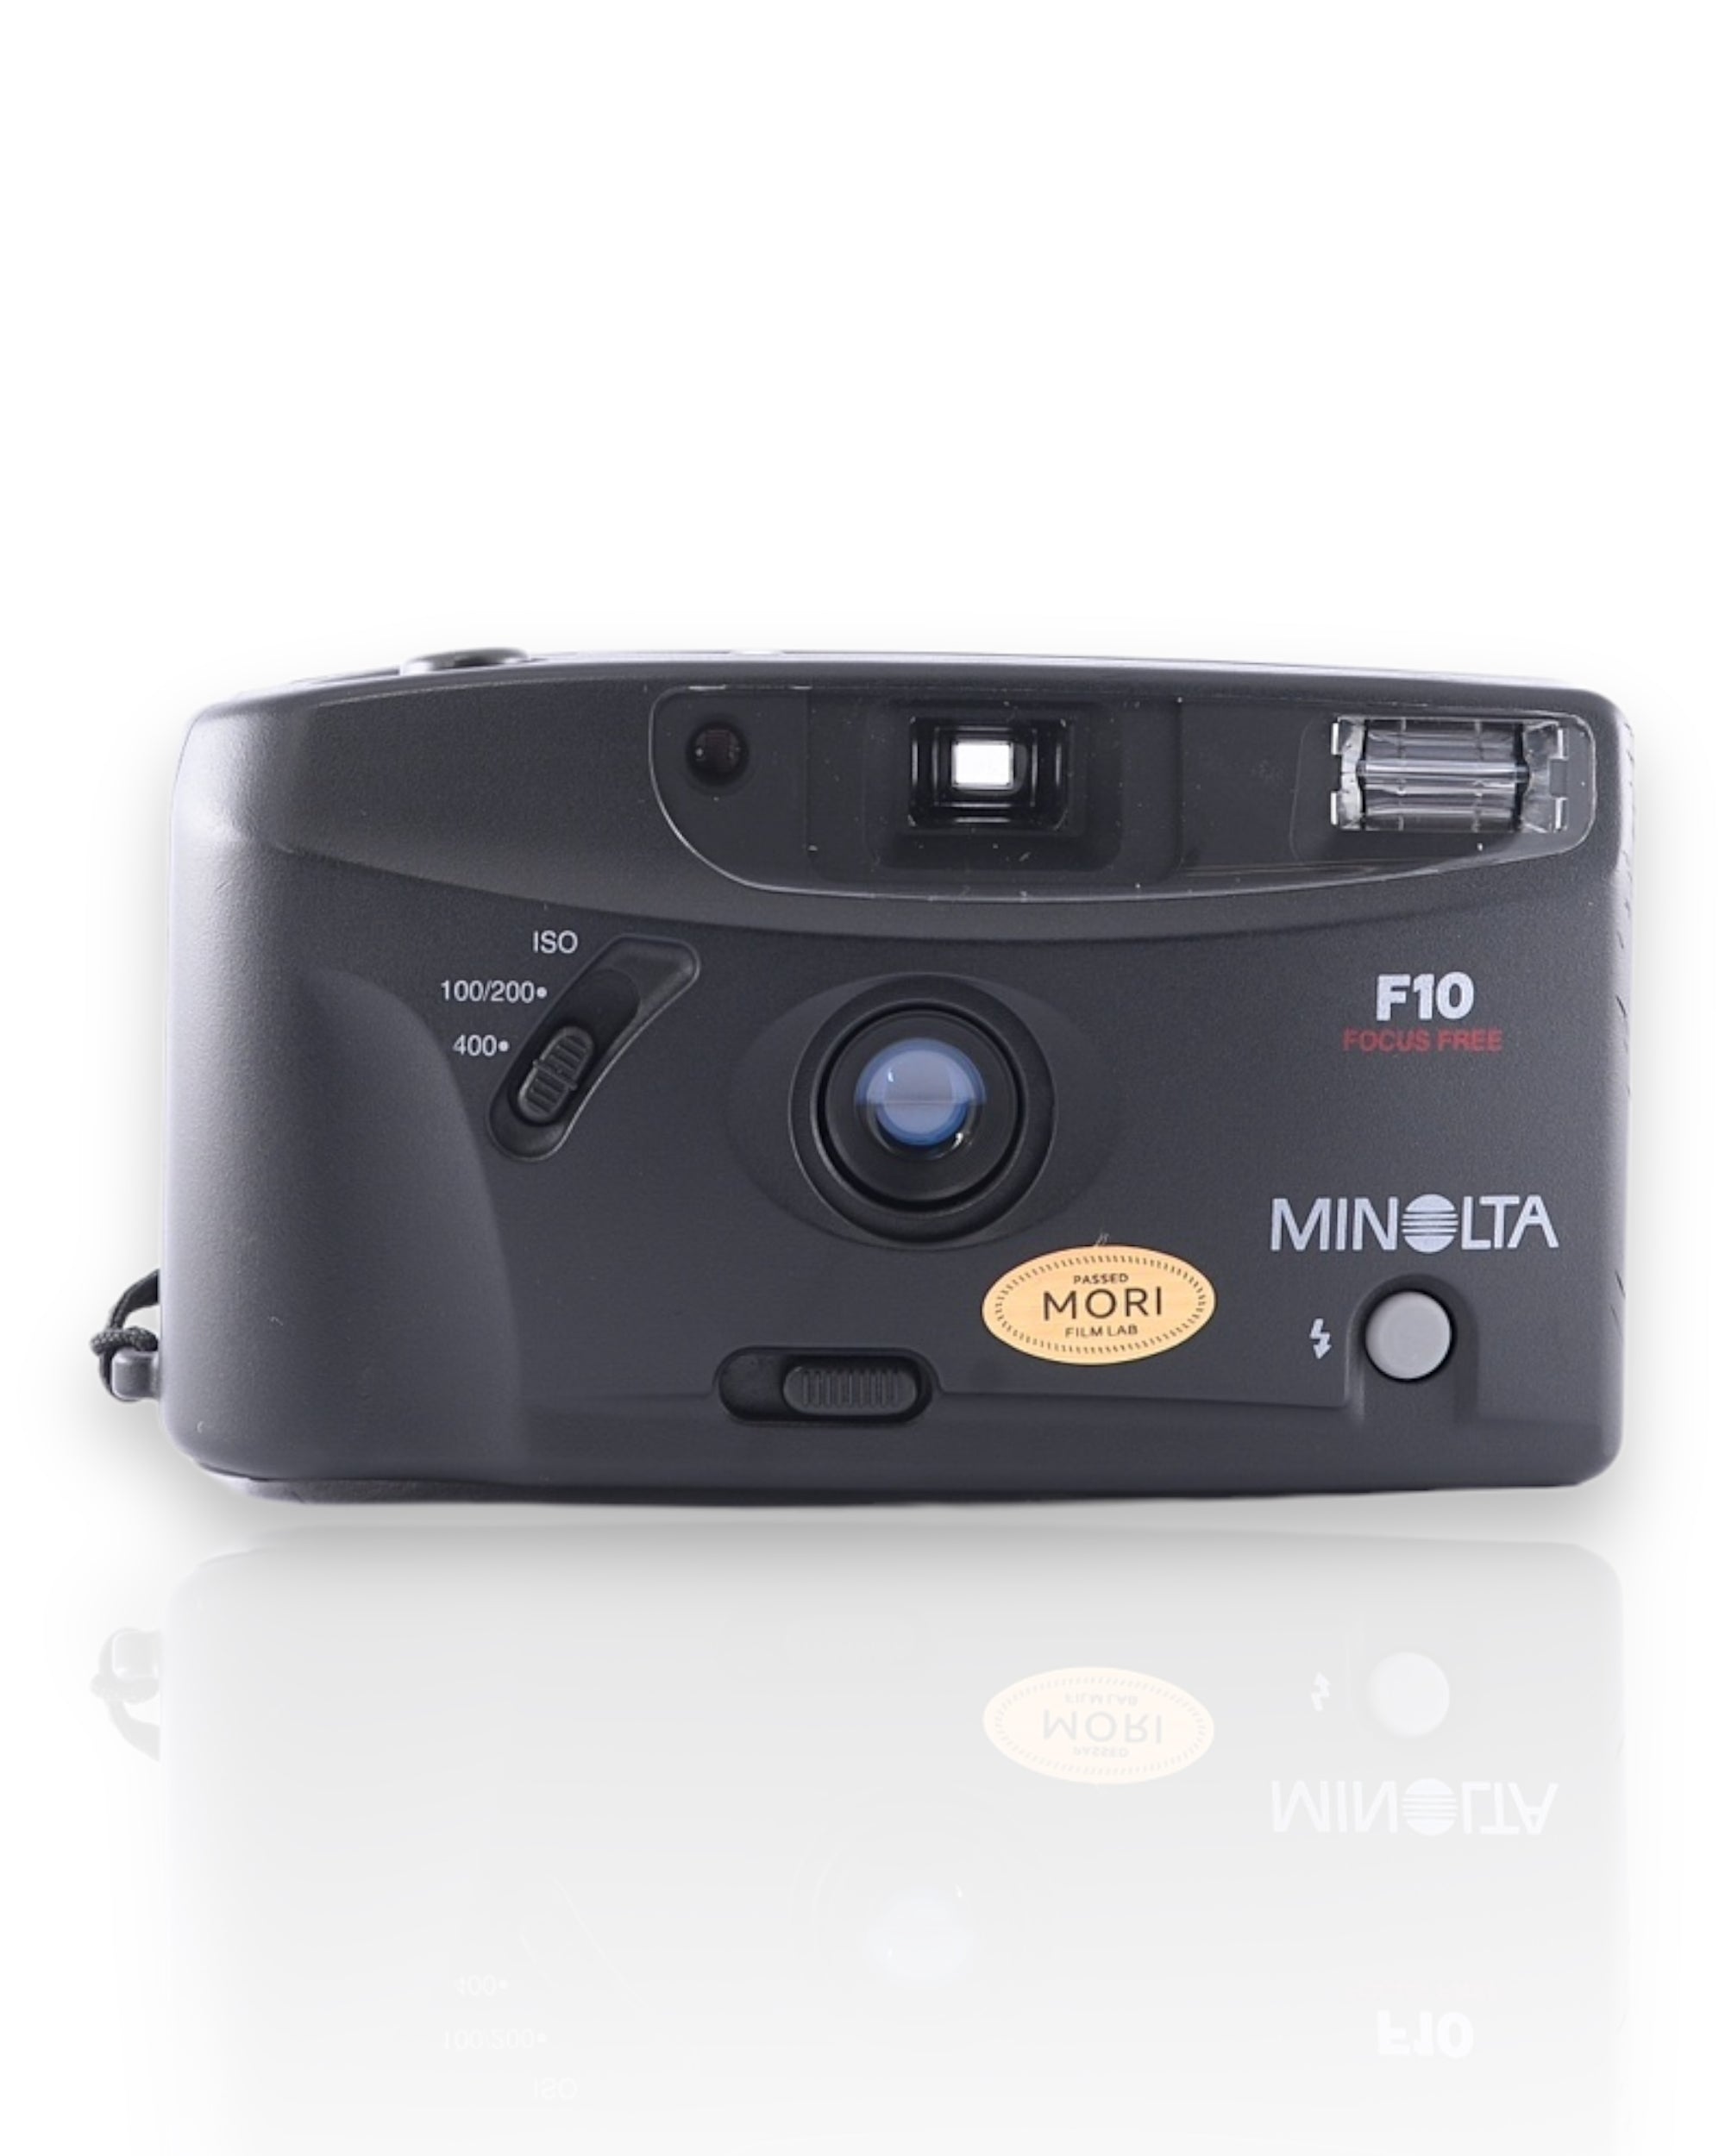 Minolta F10 35mm Point & Shoot Camera